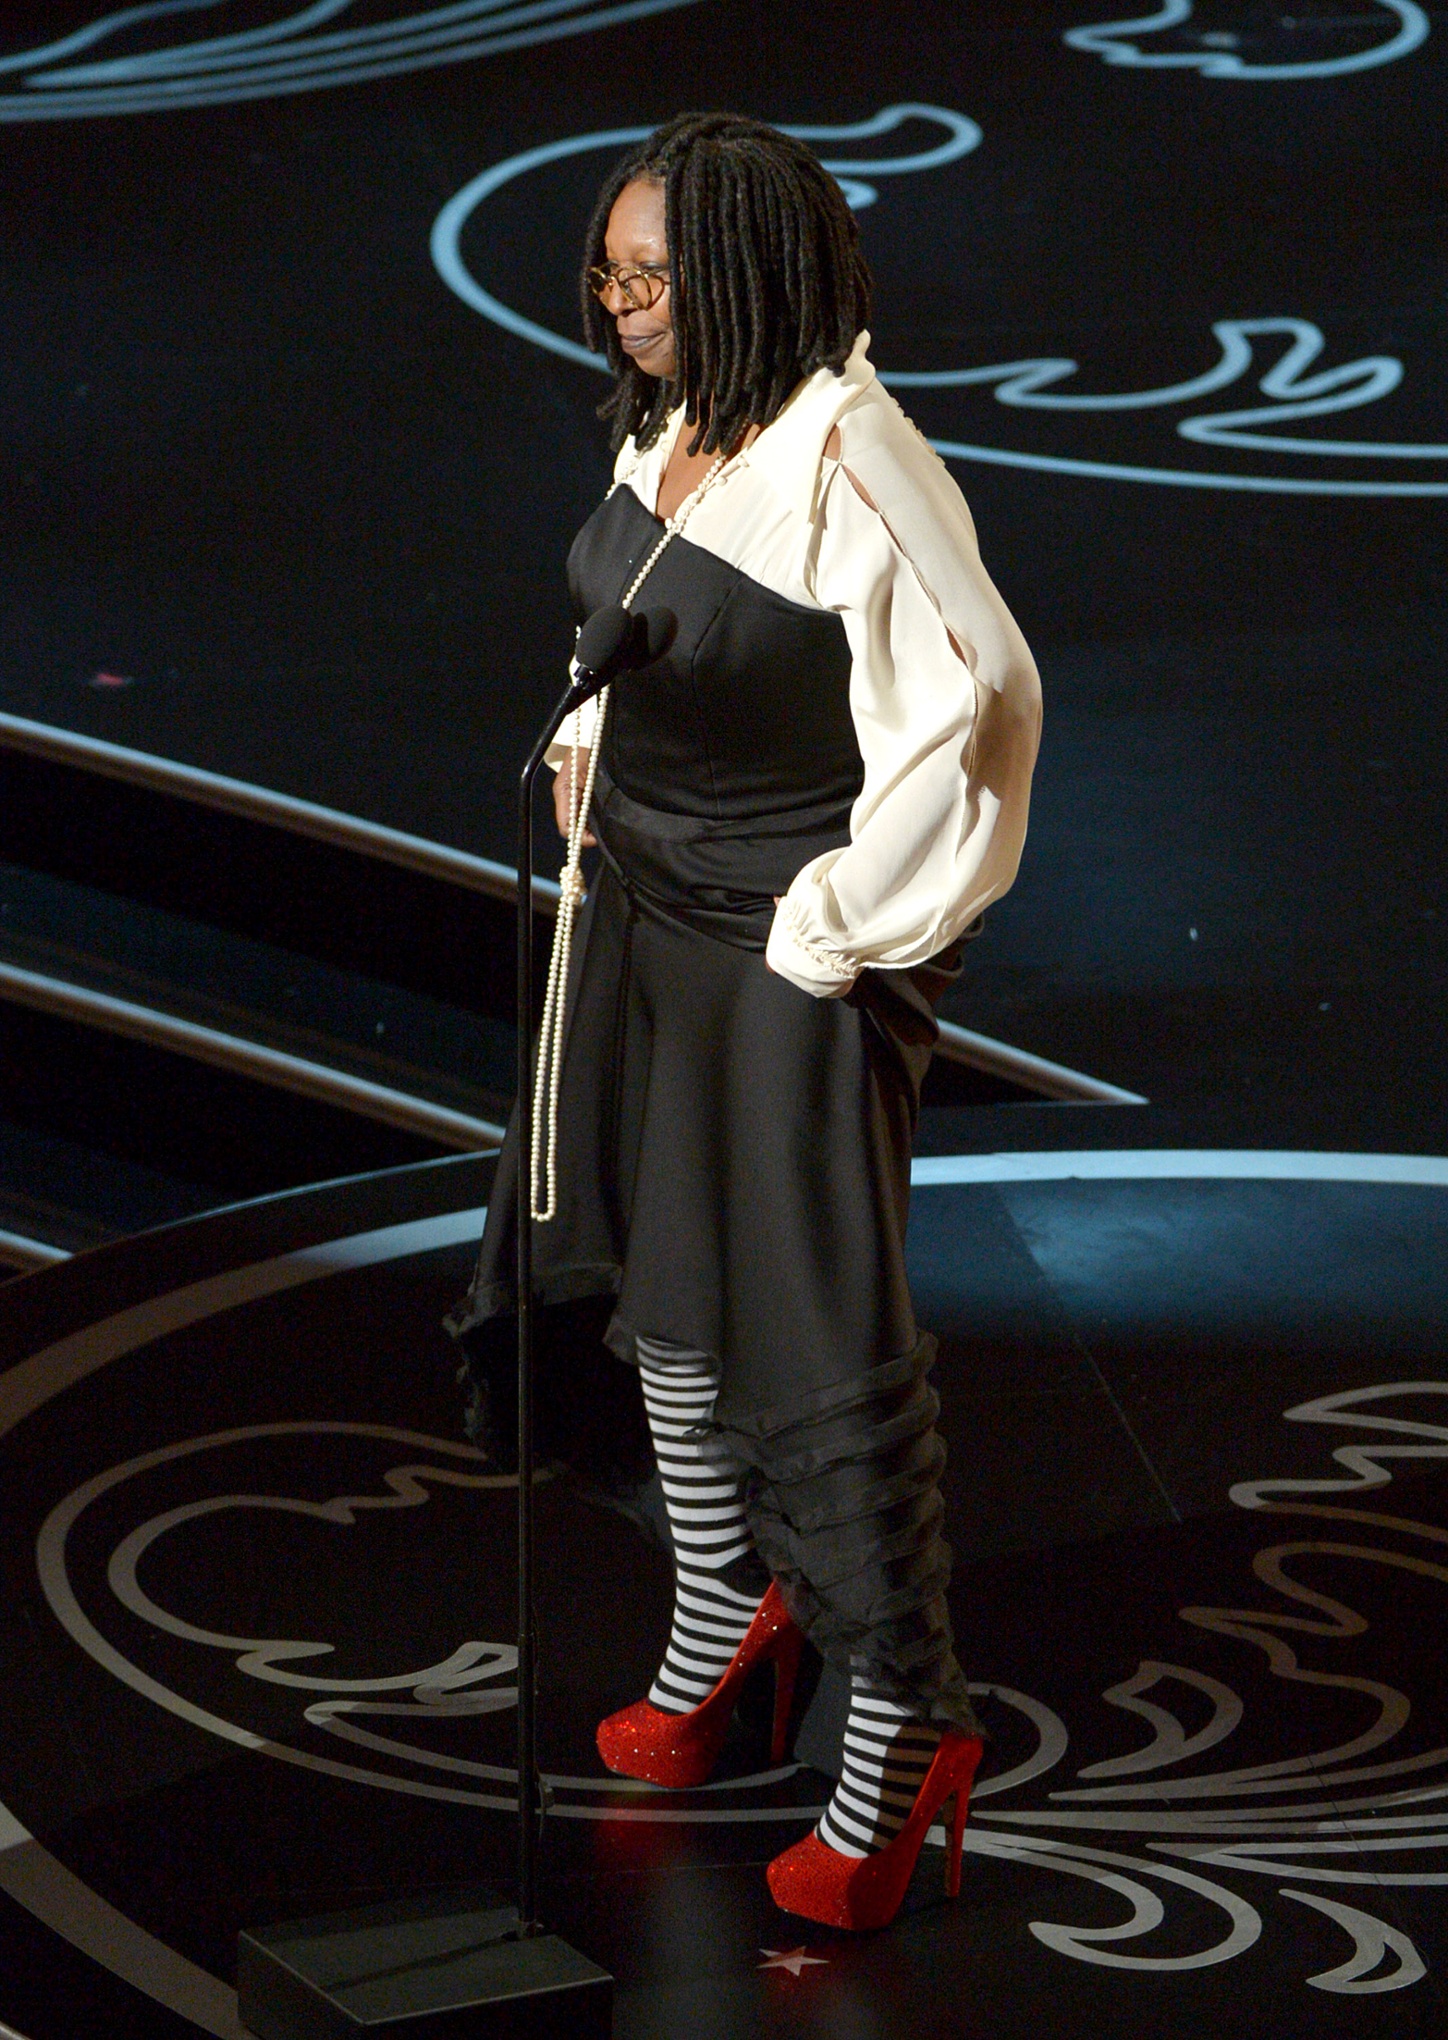 Whoopi Goldberg at the Oscars.